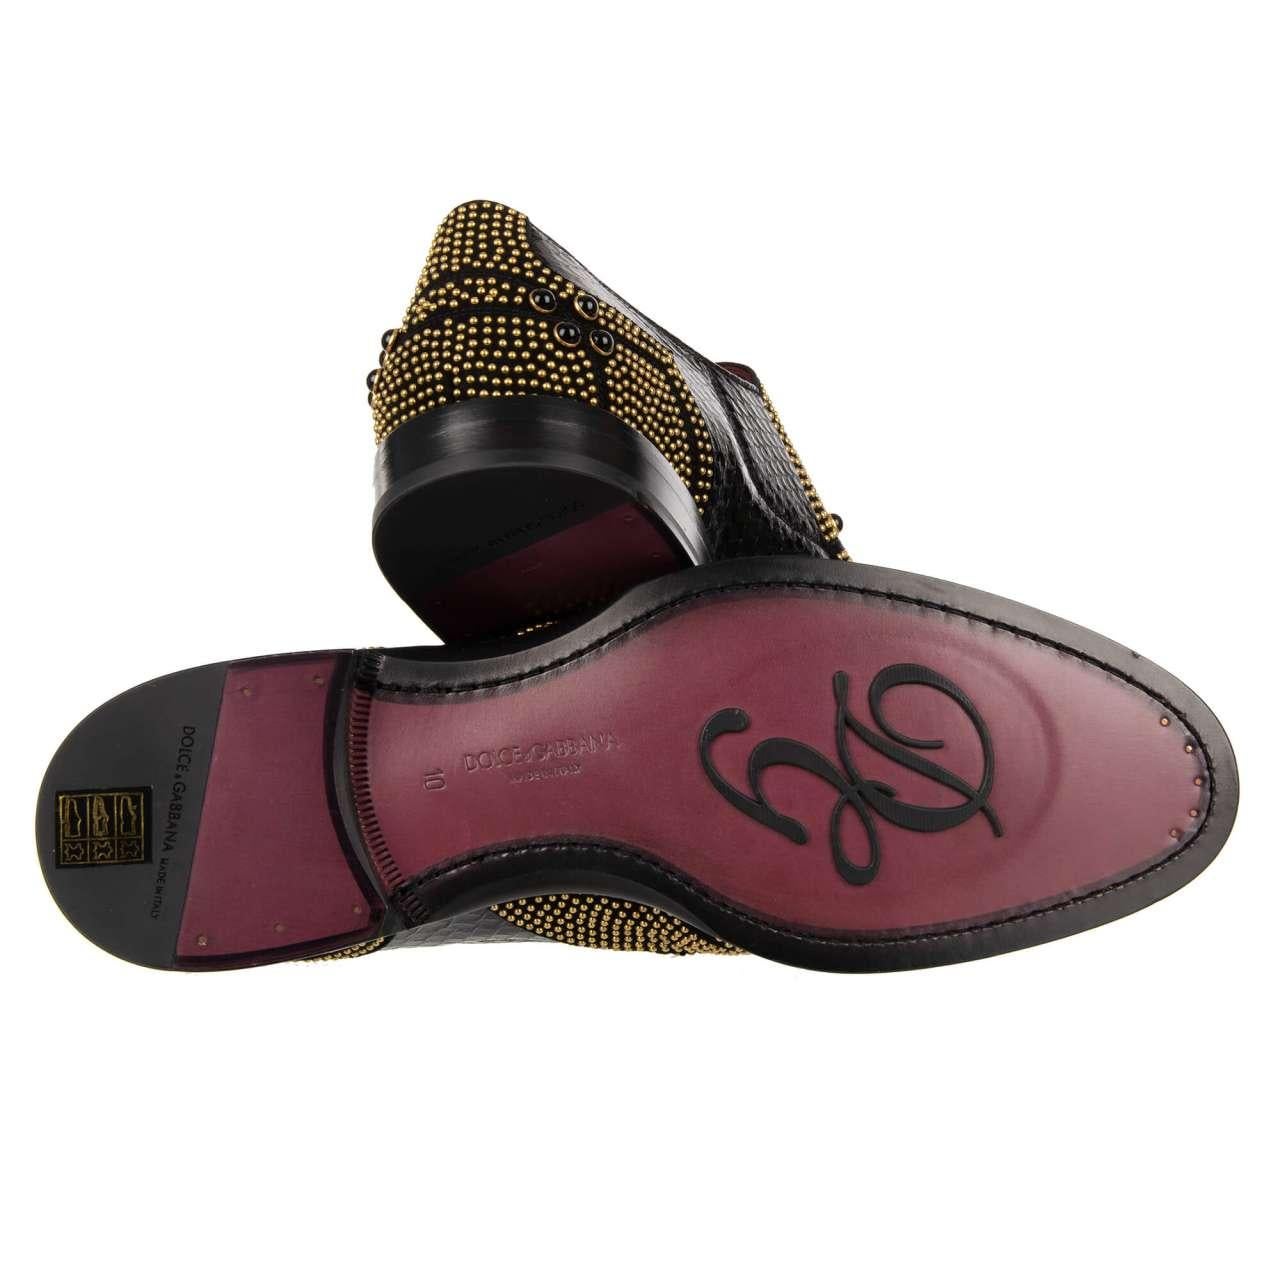 Dolce & Gabbana Snake Studs Pearl Shoes Loafer NAPLES Black Gold 44 UK 10 US 11 For Sale 1